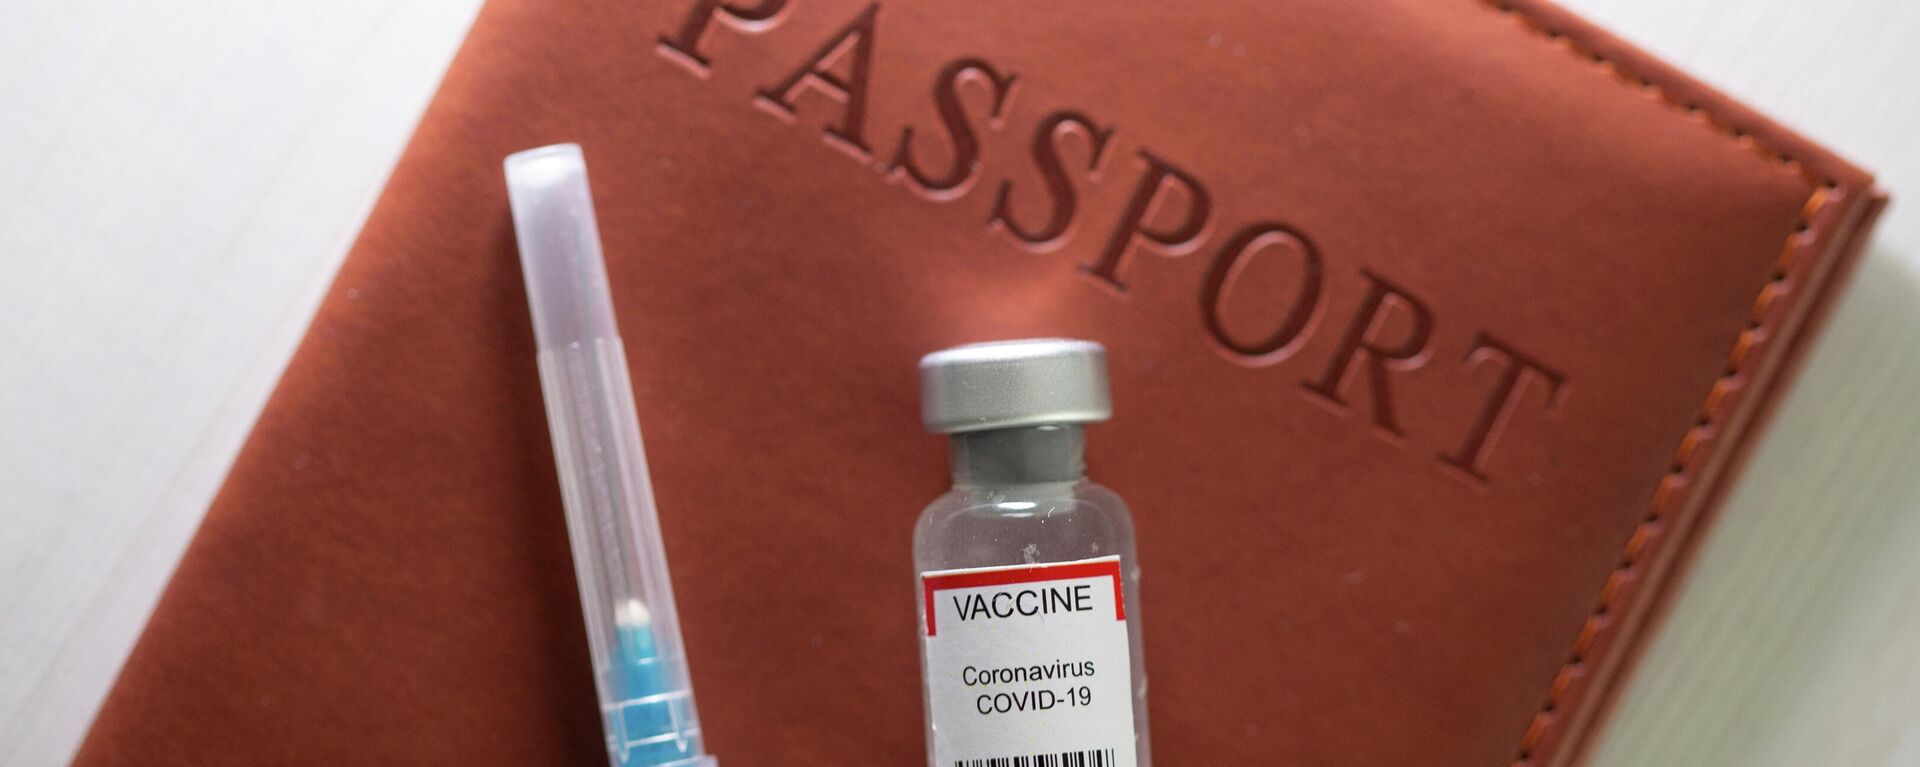 Pasaporte de vacunación contra el coronavirus - Sputnik Mundo, 1920, 07.06.2021